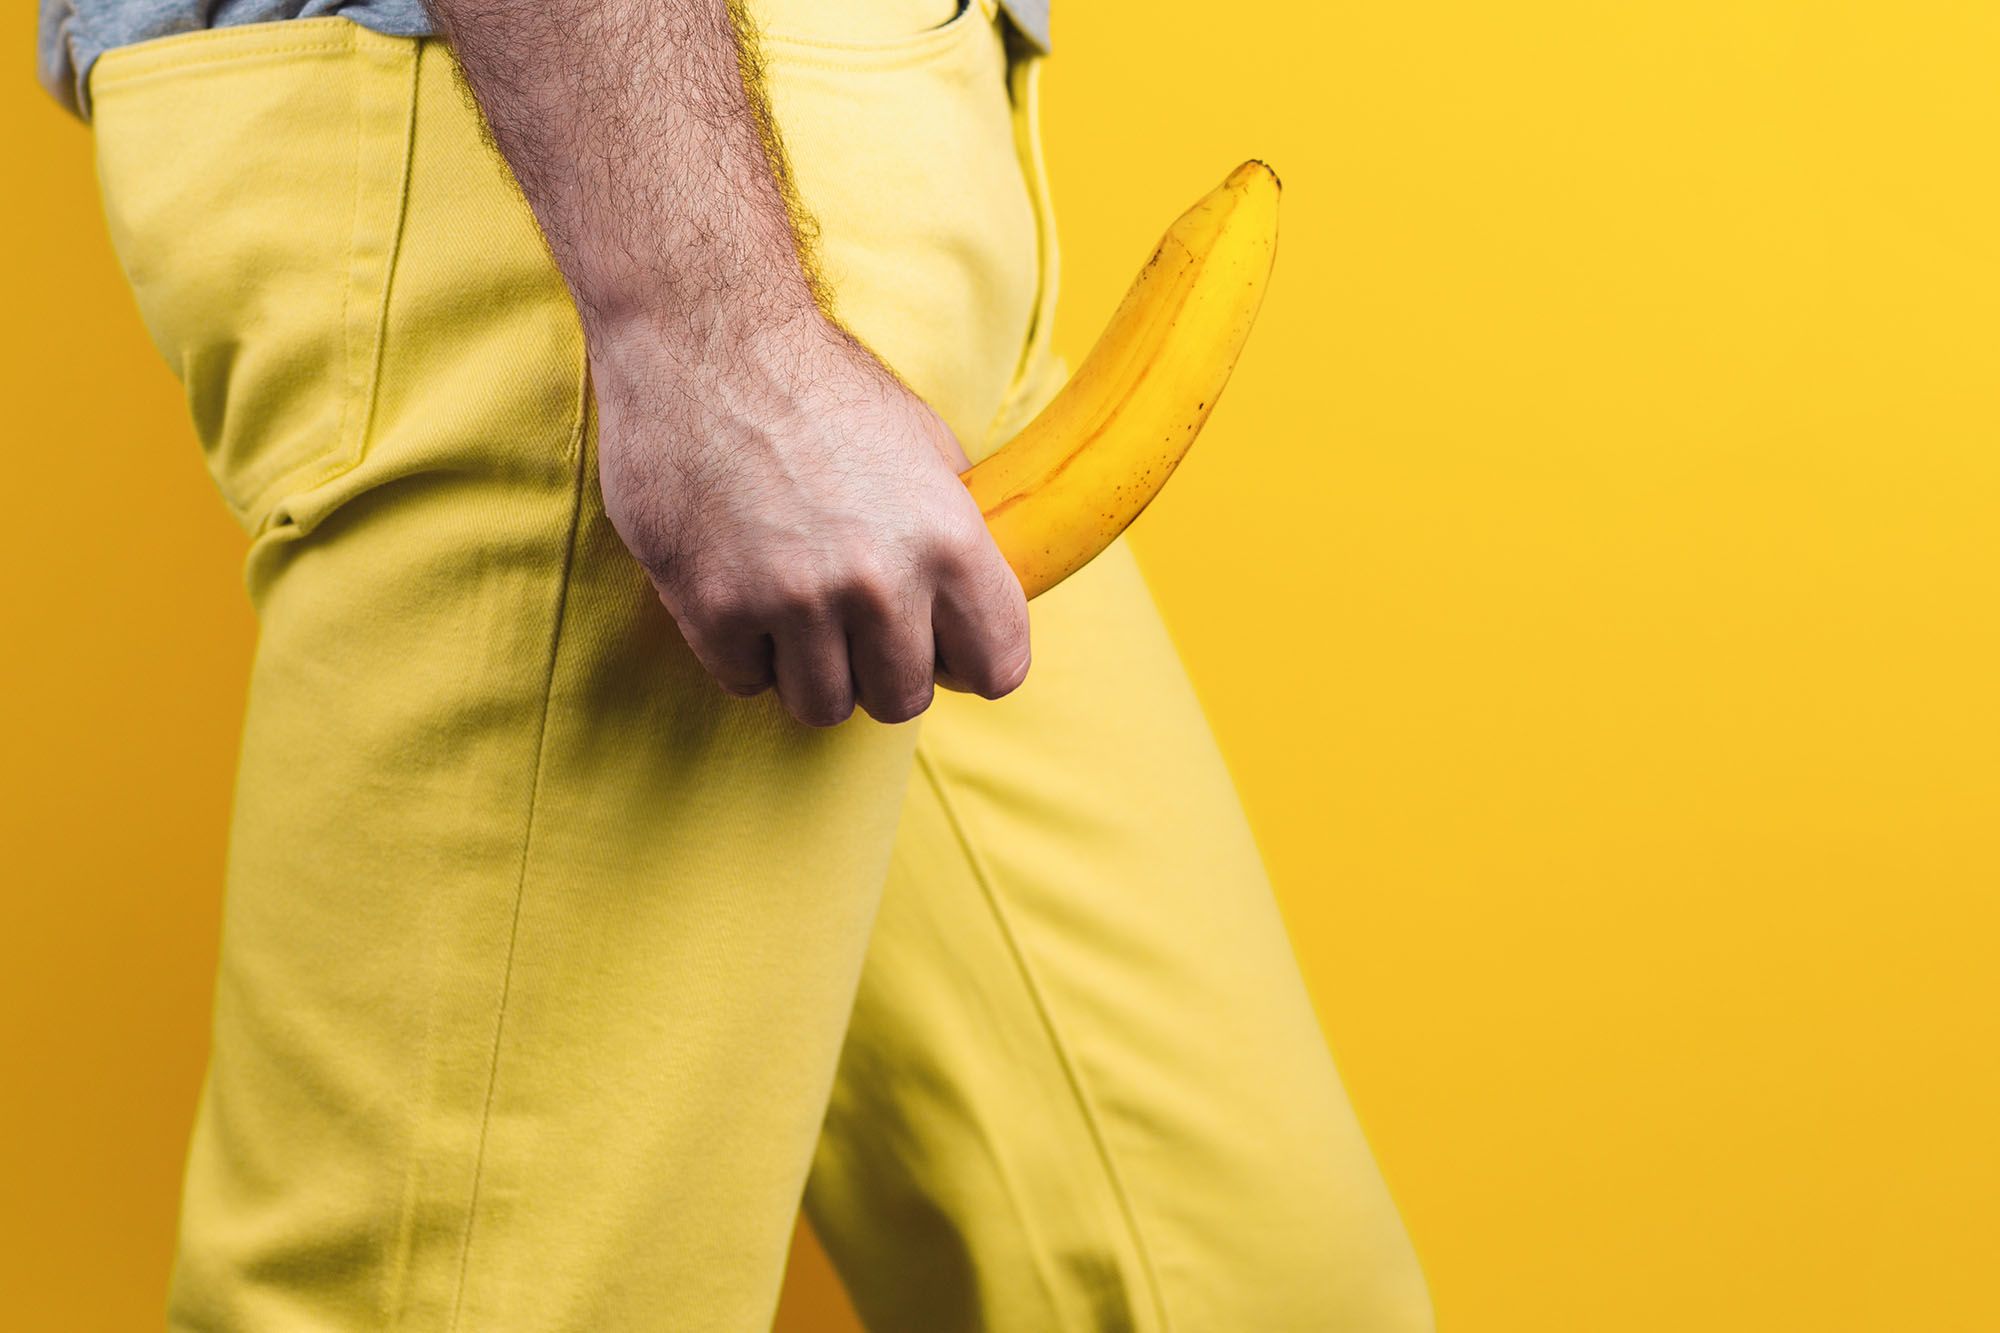 Penis in Unterhose - Abbildung eines männlichen, bekleideten Unterkörpers, welcher mit einer Banane als Penis-Attrappe einen erigierten Penis andeutet.